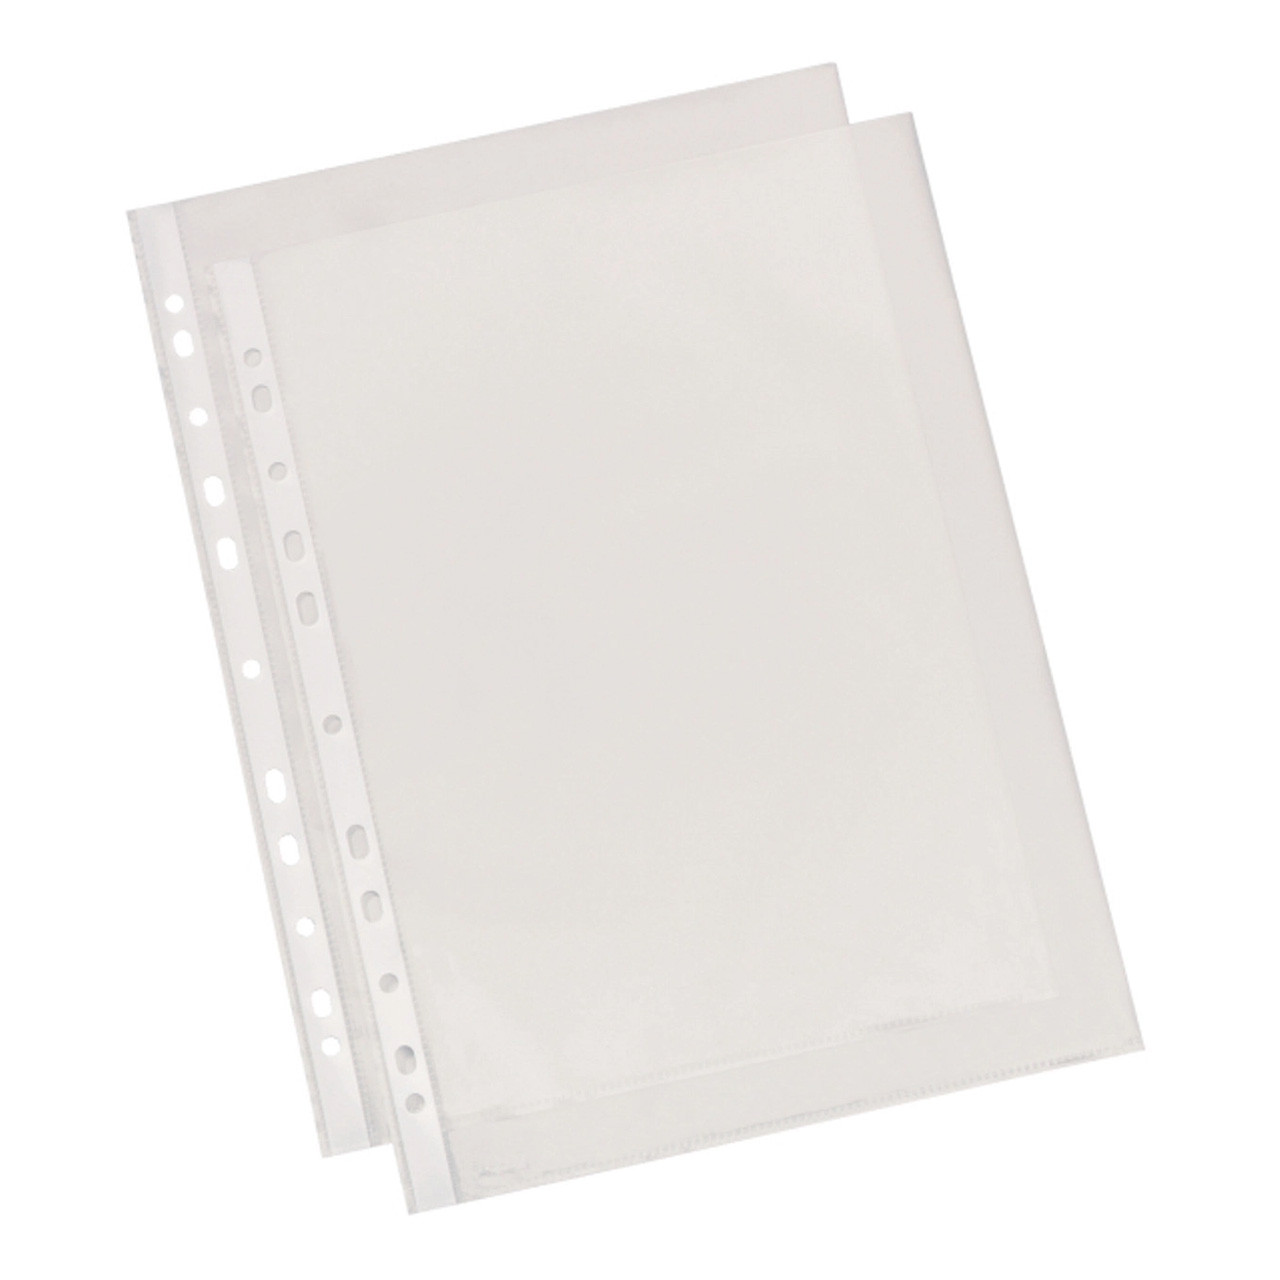 Leitz Lightweight Sheet Protectors, A4 Size, 100 Pack - Bindertek